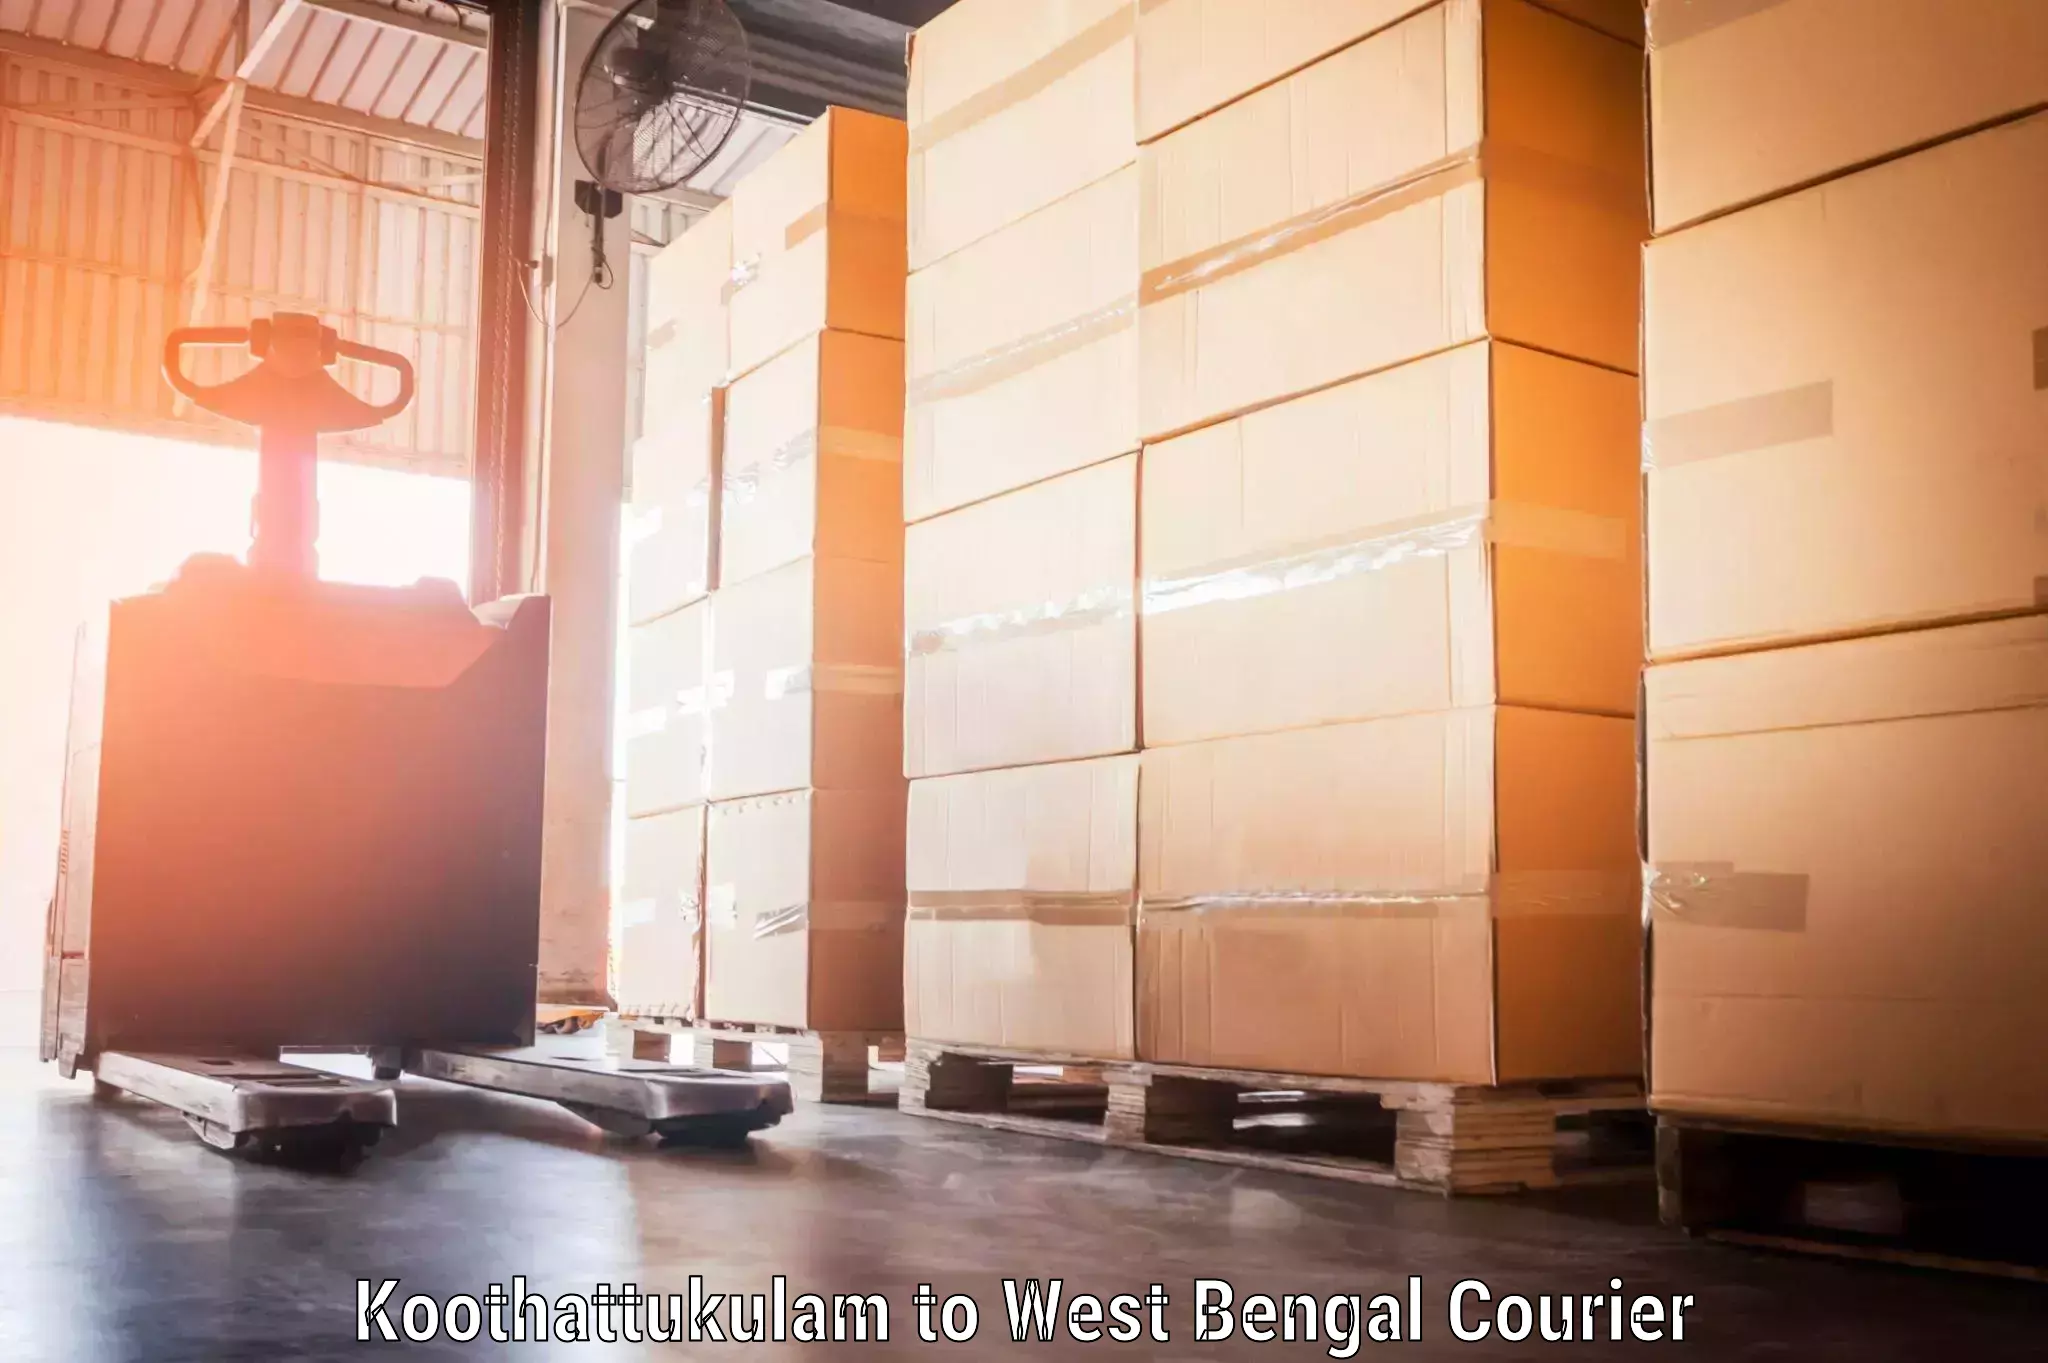 Luggage delivery optimization Koothattukulam to West Bengal